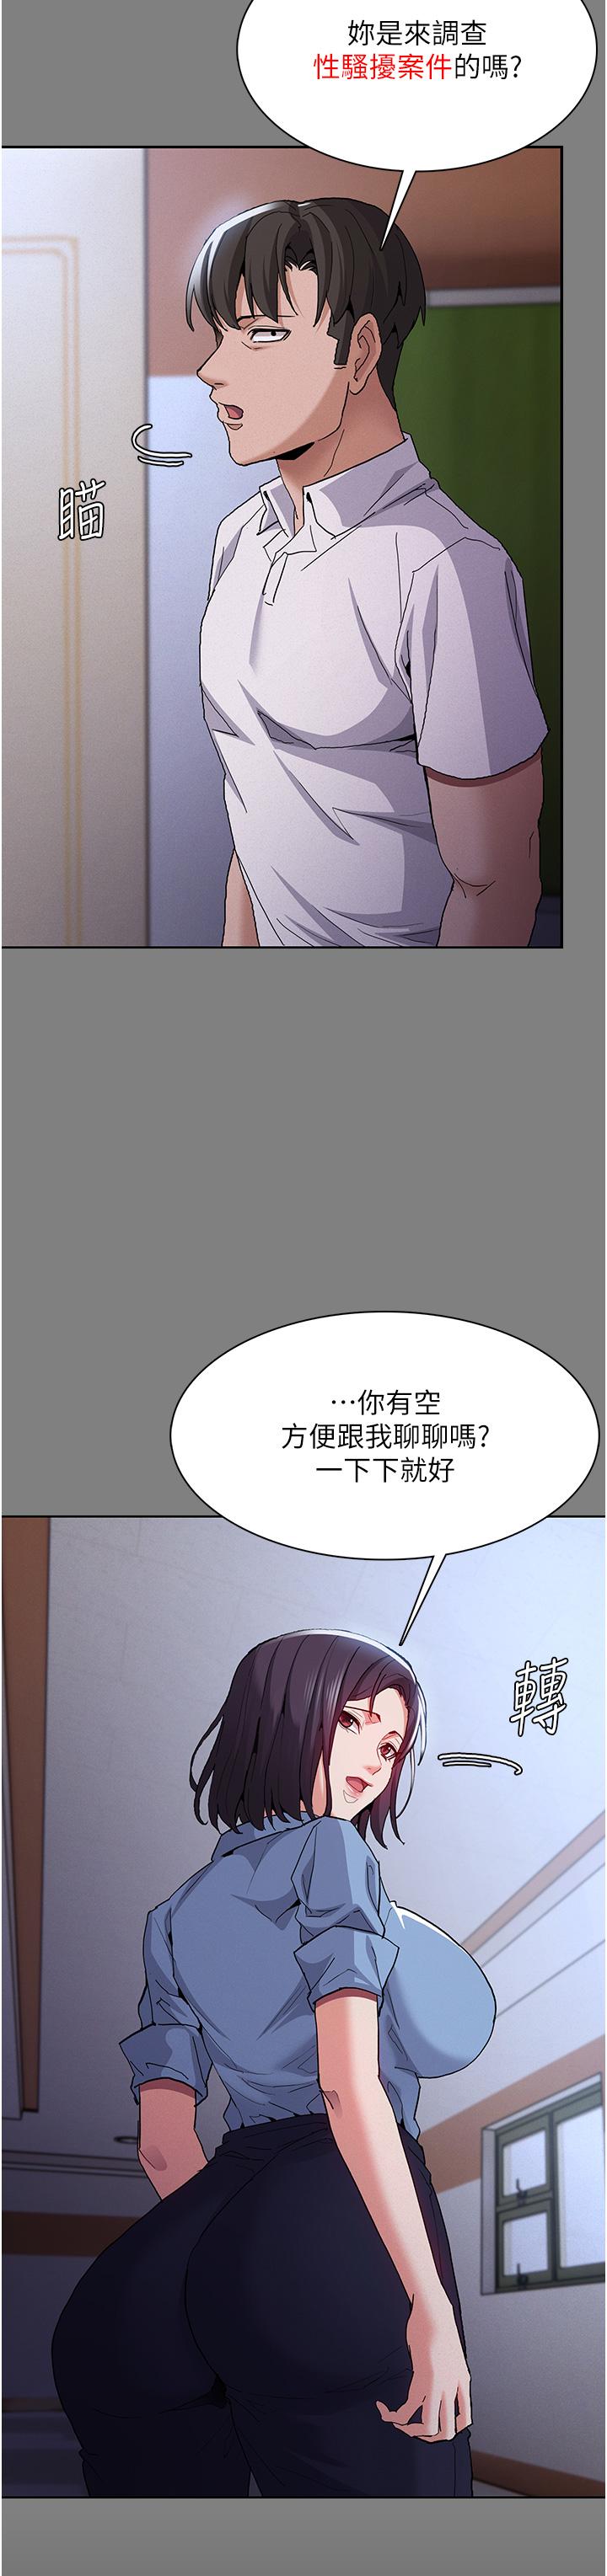 韩国污漫画 癡漢成癮 第50话-高超的爱抚手法 5